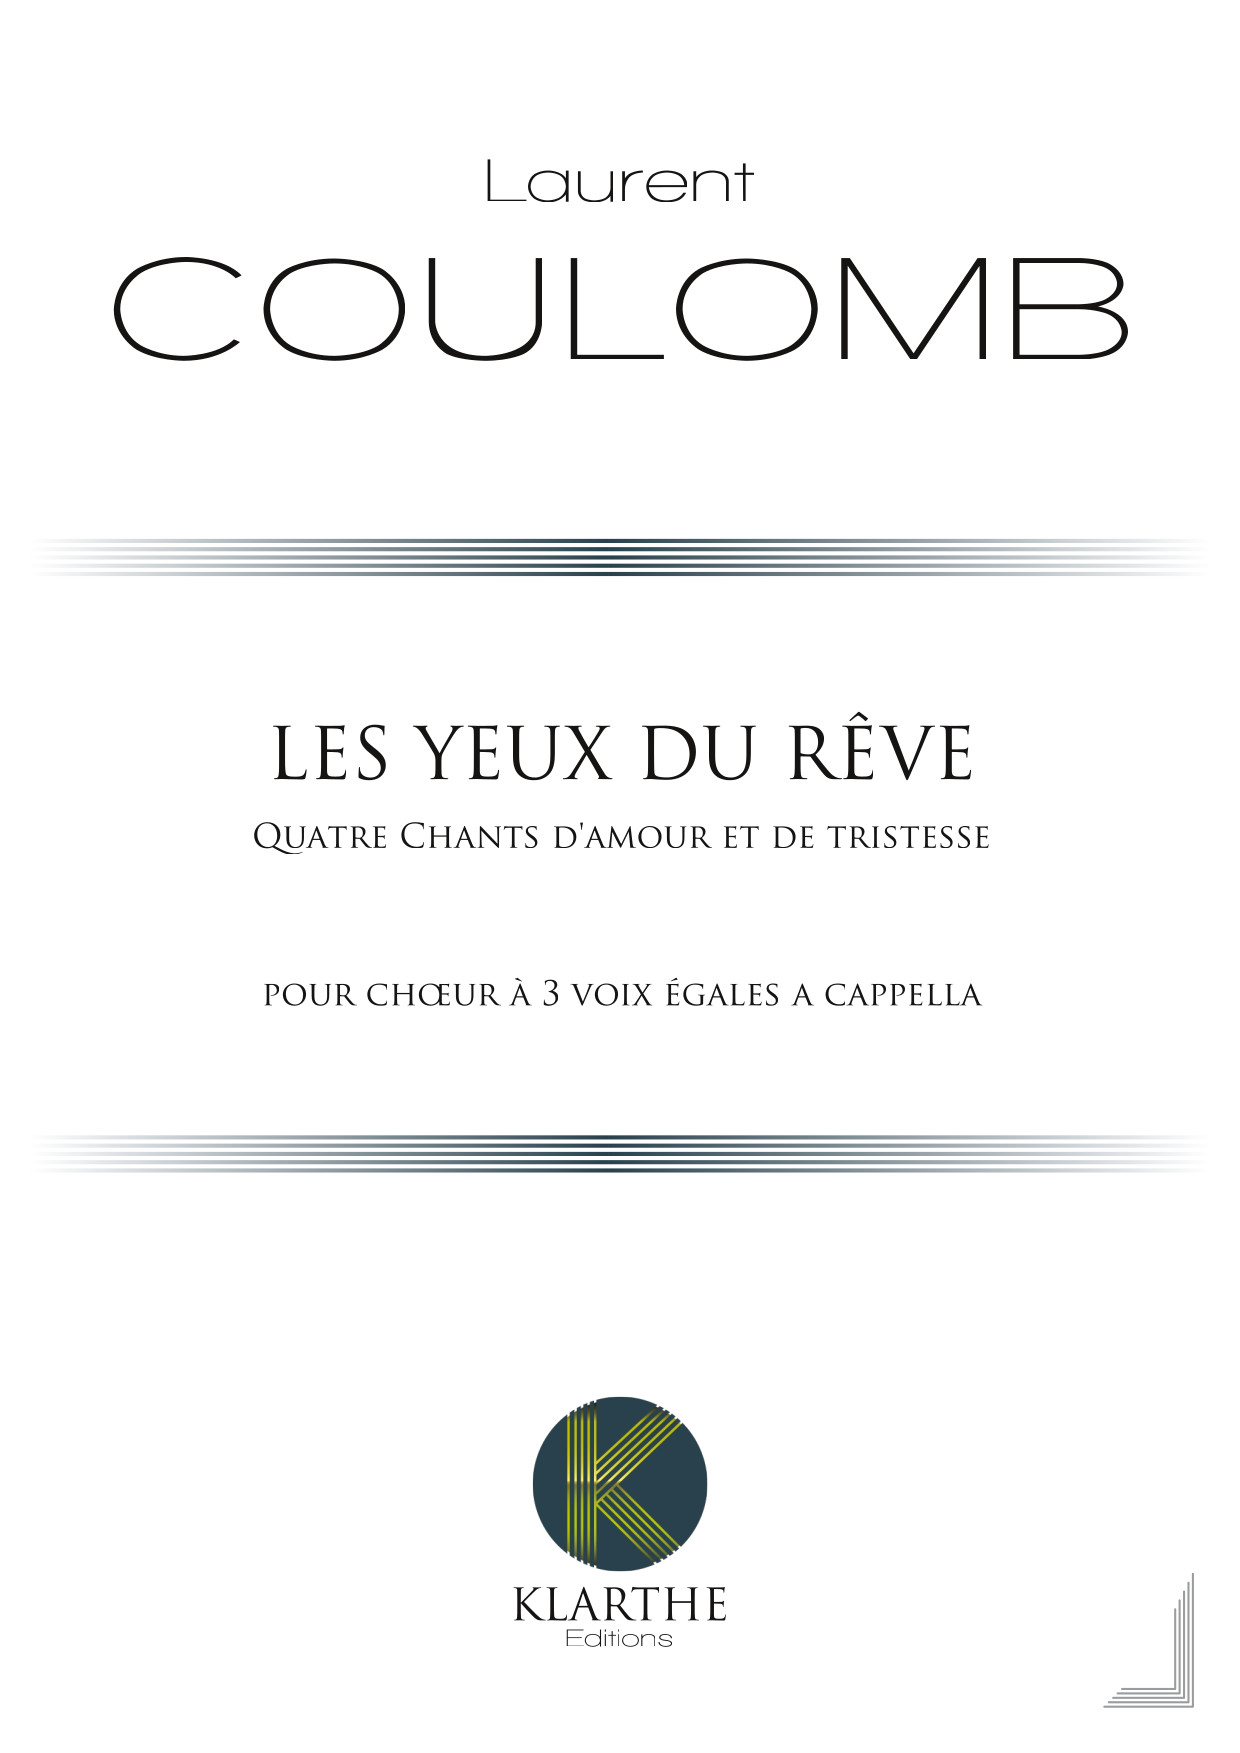 Les Yeux du r�ve, opus 49 (COULOMB LAURENT)